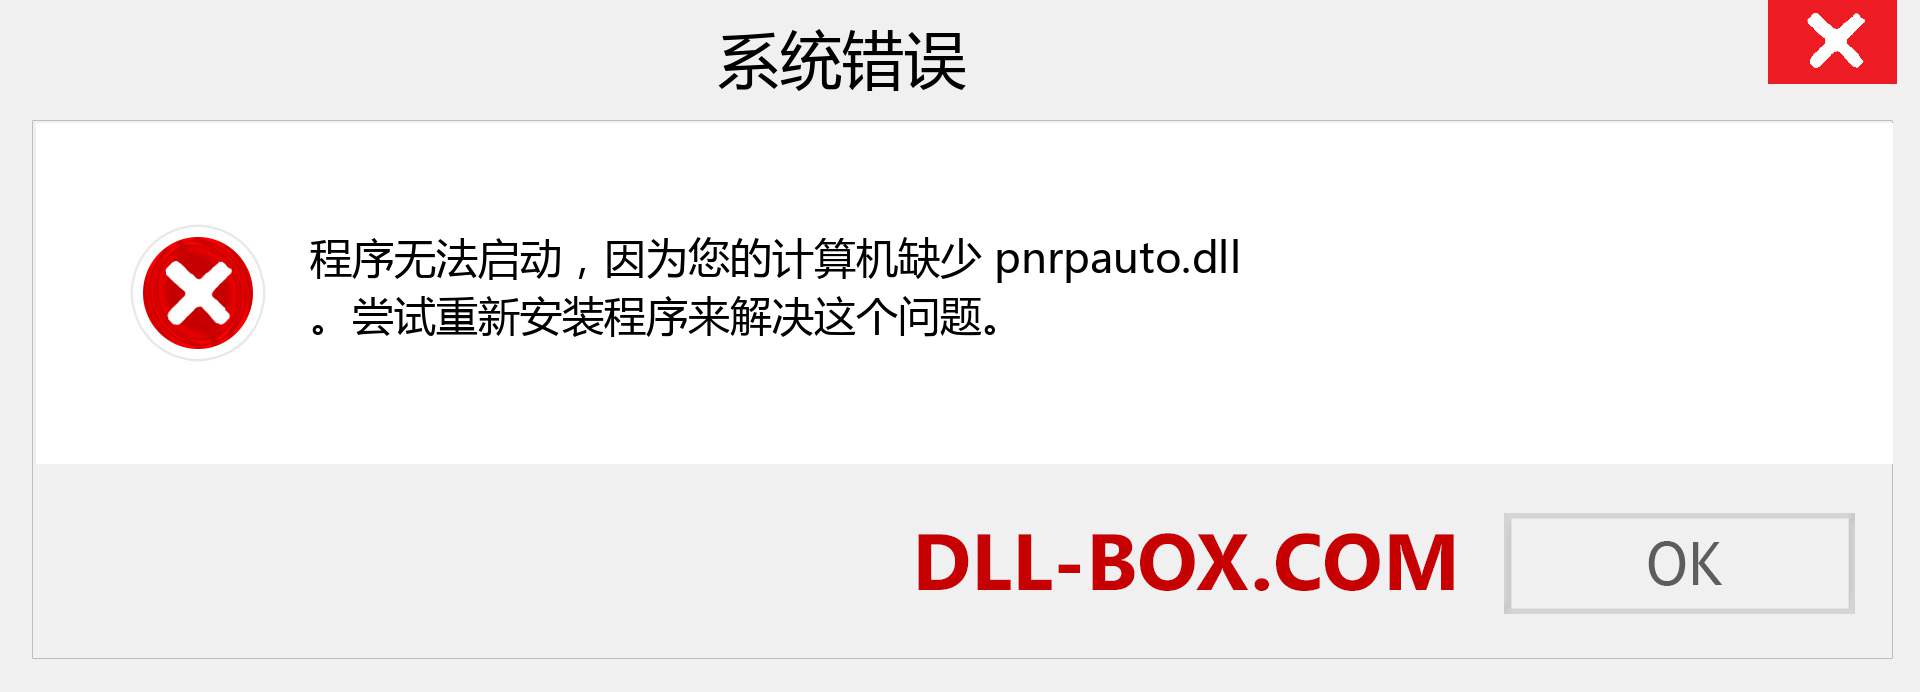 pnrpauto.dll 文件丢失？。 适用于 Windows 7、8、10 的下载 - 修复 Windows、照片、图像上的 pnrpauto dll 丢失错误